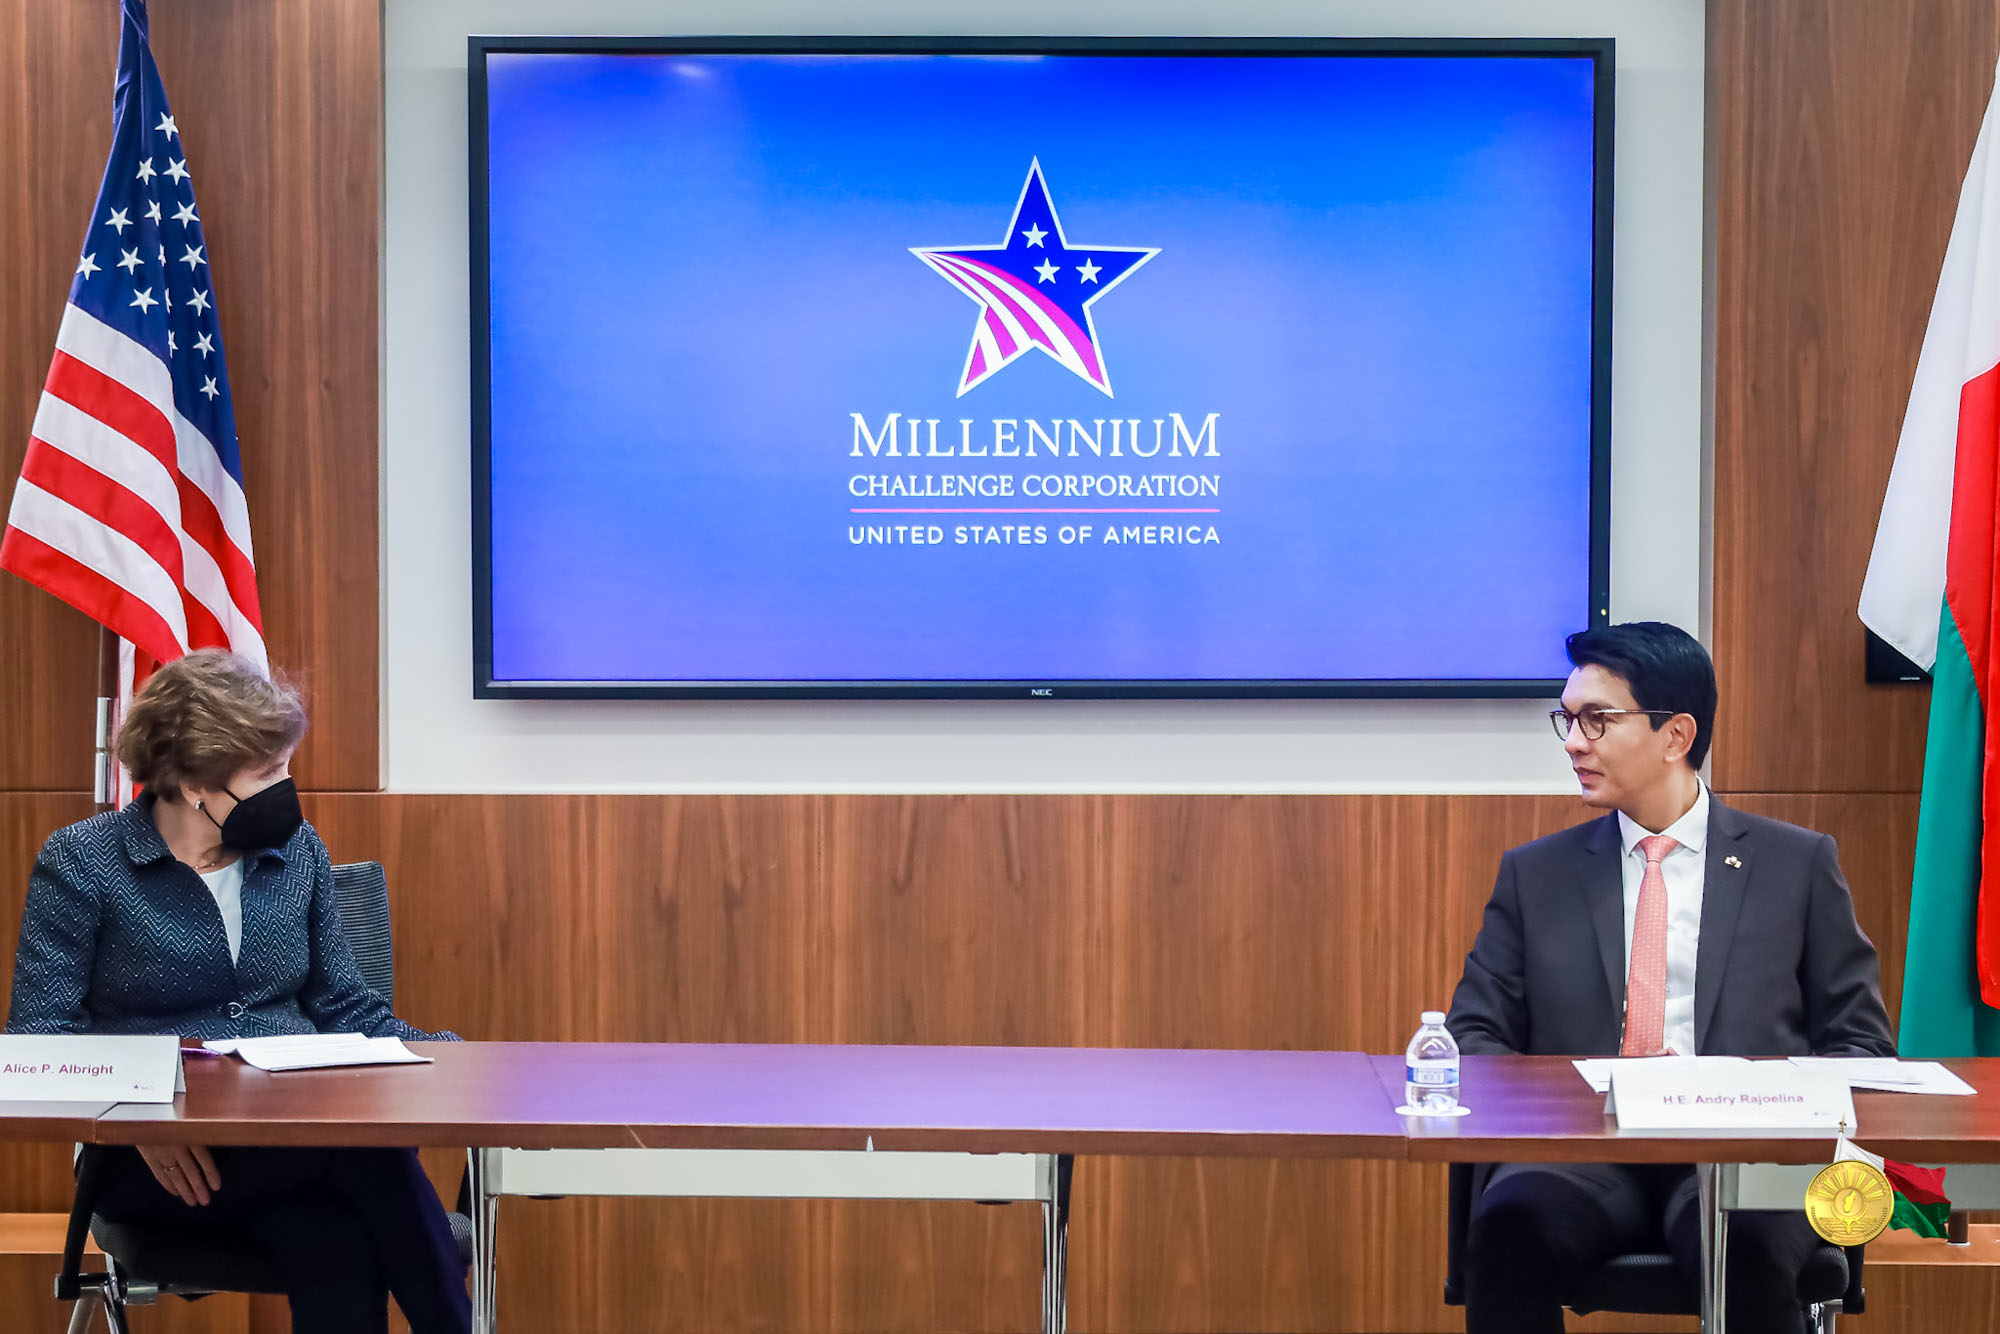 Rencontre avec Madame Alice Patterson Albright, Présidente Directrice Générale de Millenium Challenge Corporation (MCC)